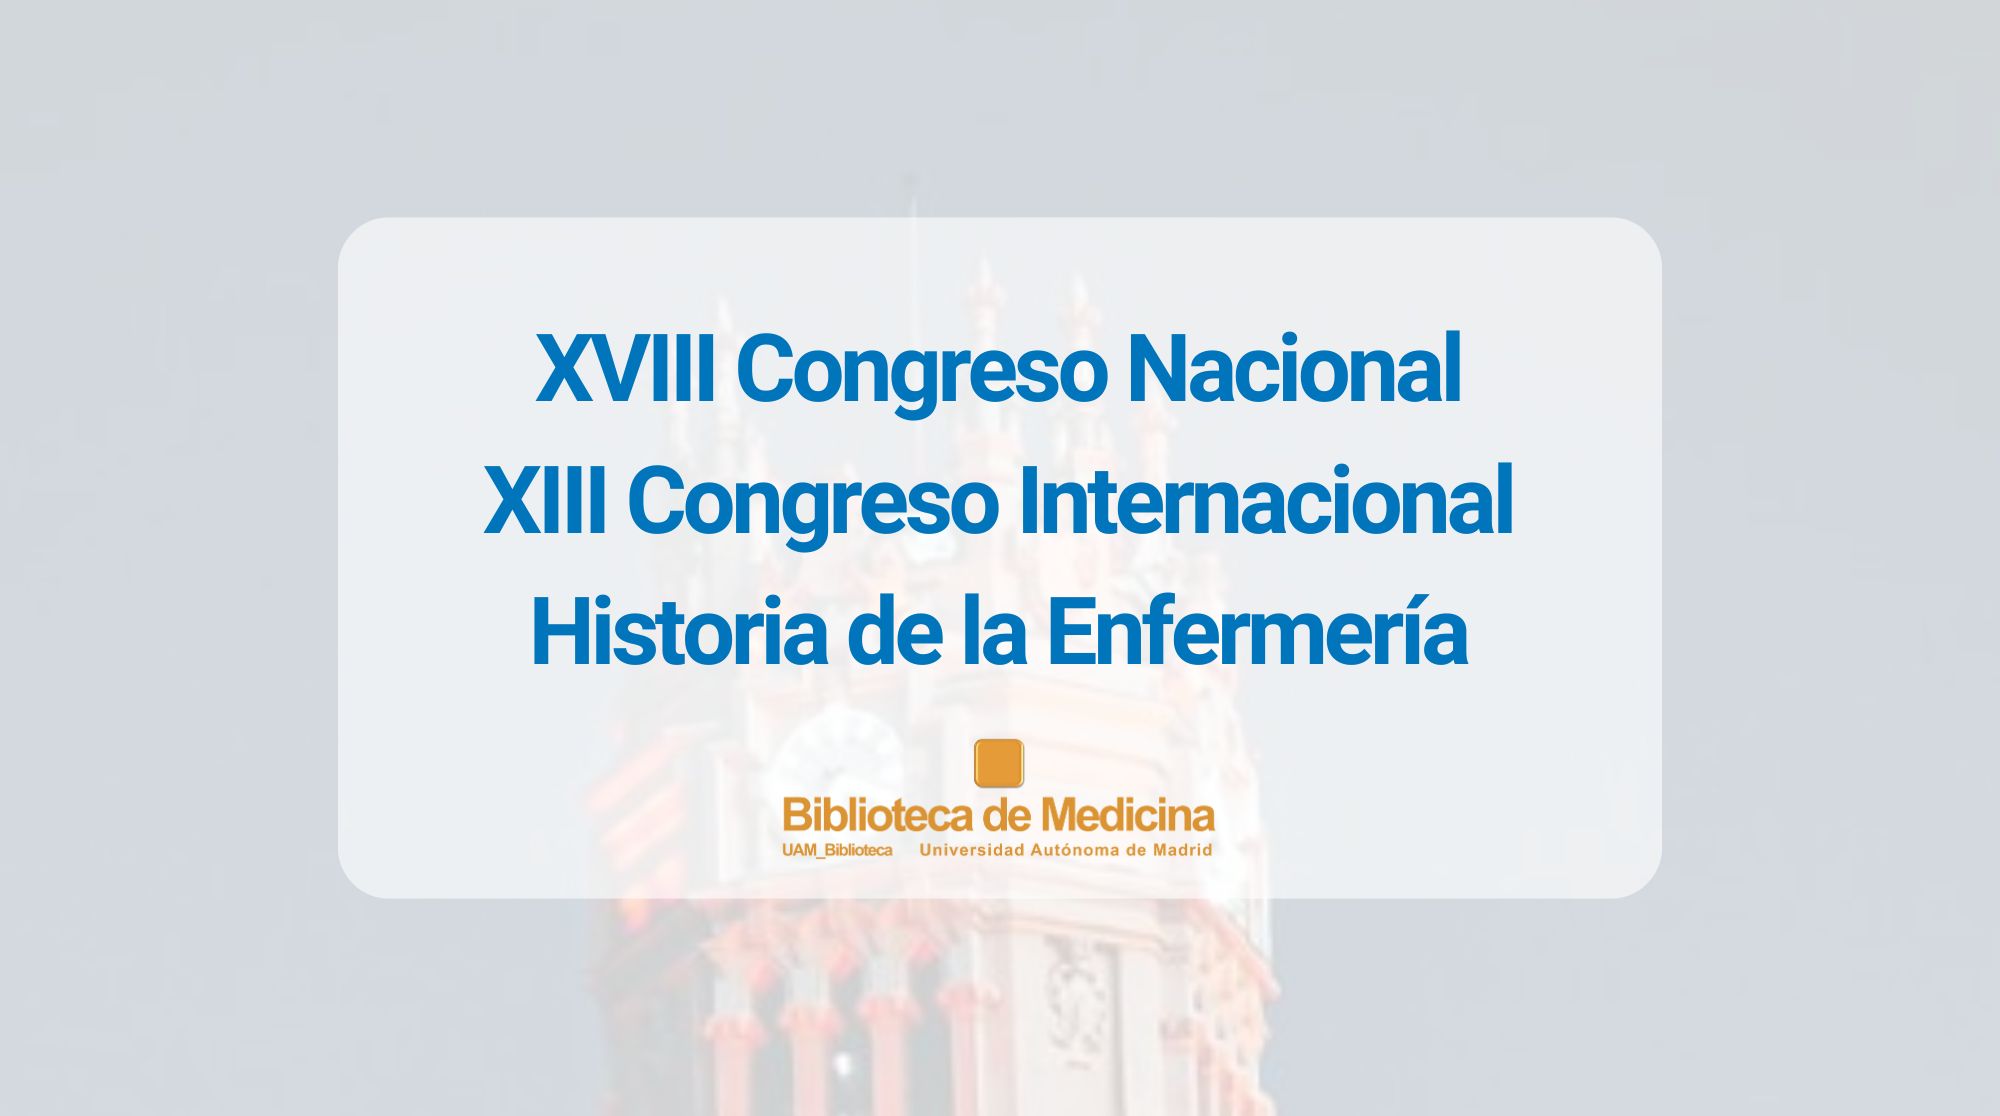 XVIII Congreso Nacional y XIII Congreso Internacional Historia de la Enfermería